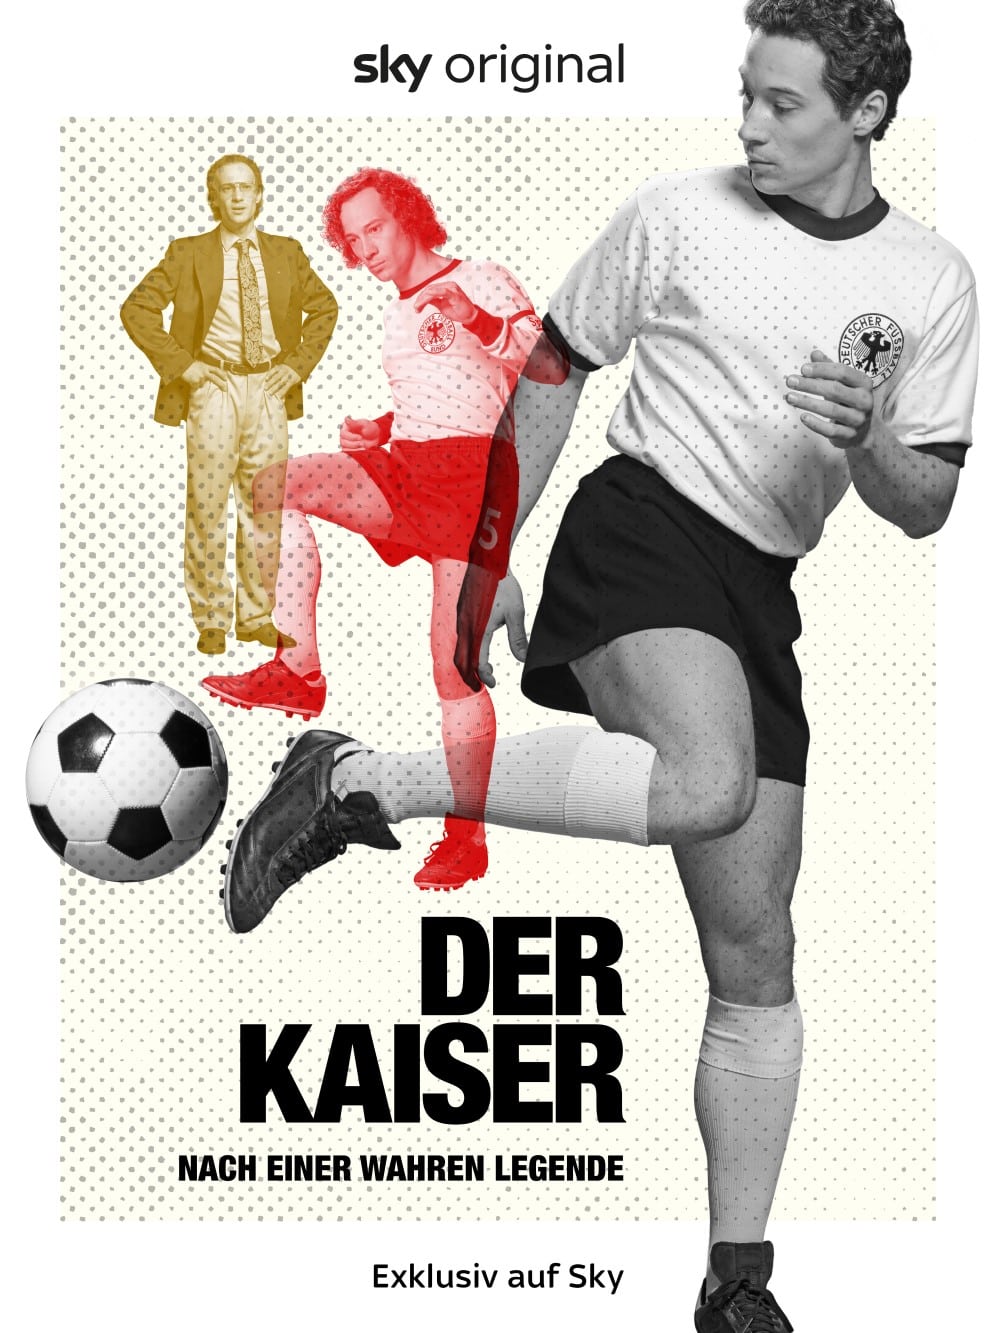 Sky Original Film "Der Kaiser" startet am 16. Dezember